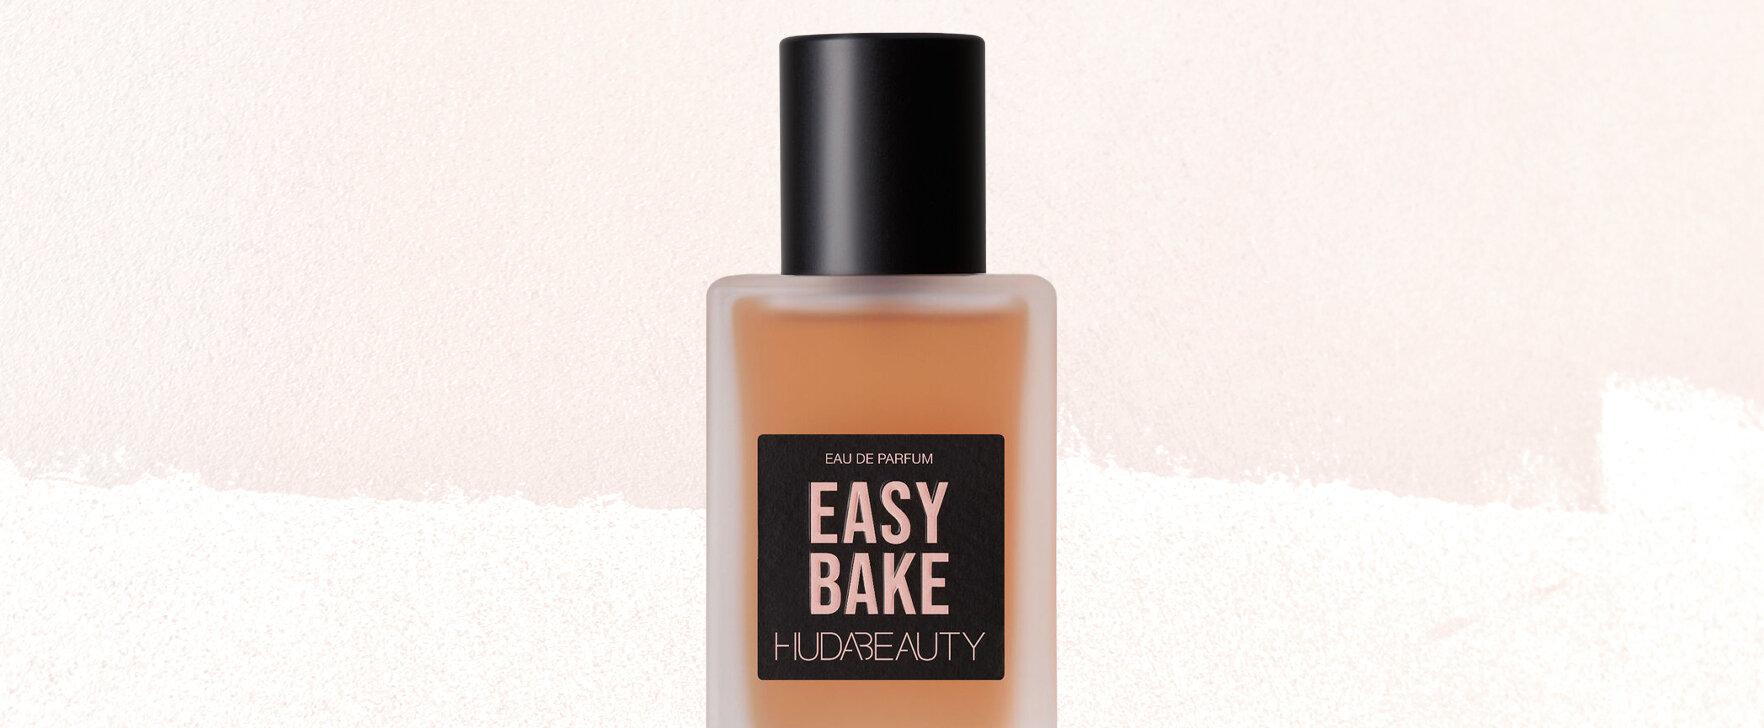 Von Puder zu Parfum: Das limitierte Eau de Parfum „Easy Bake“ von Huda Beauty